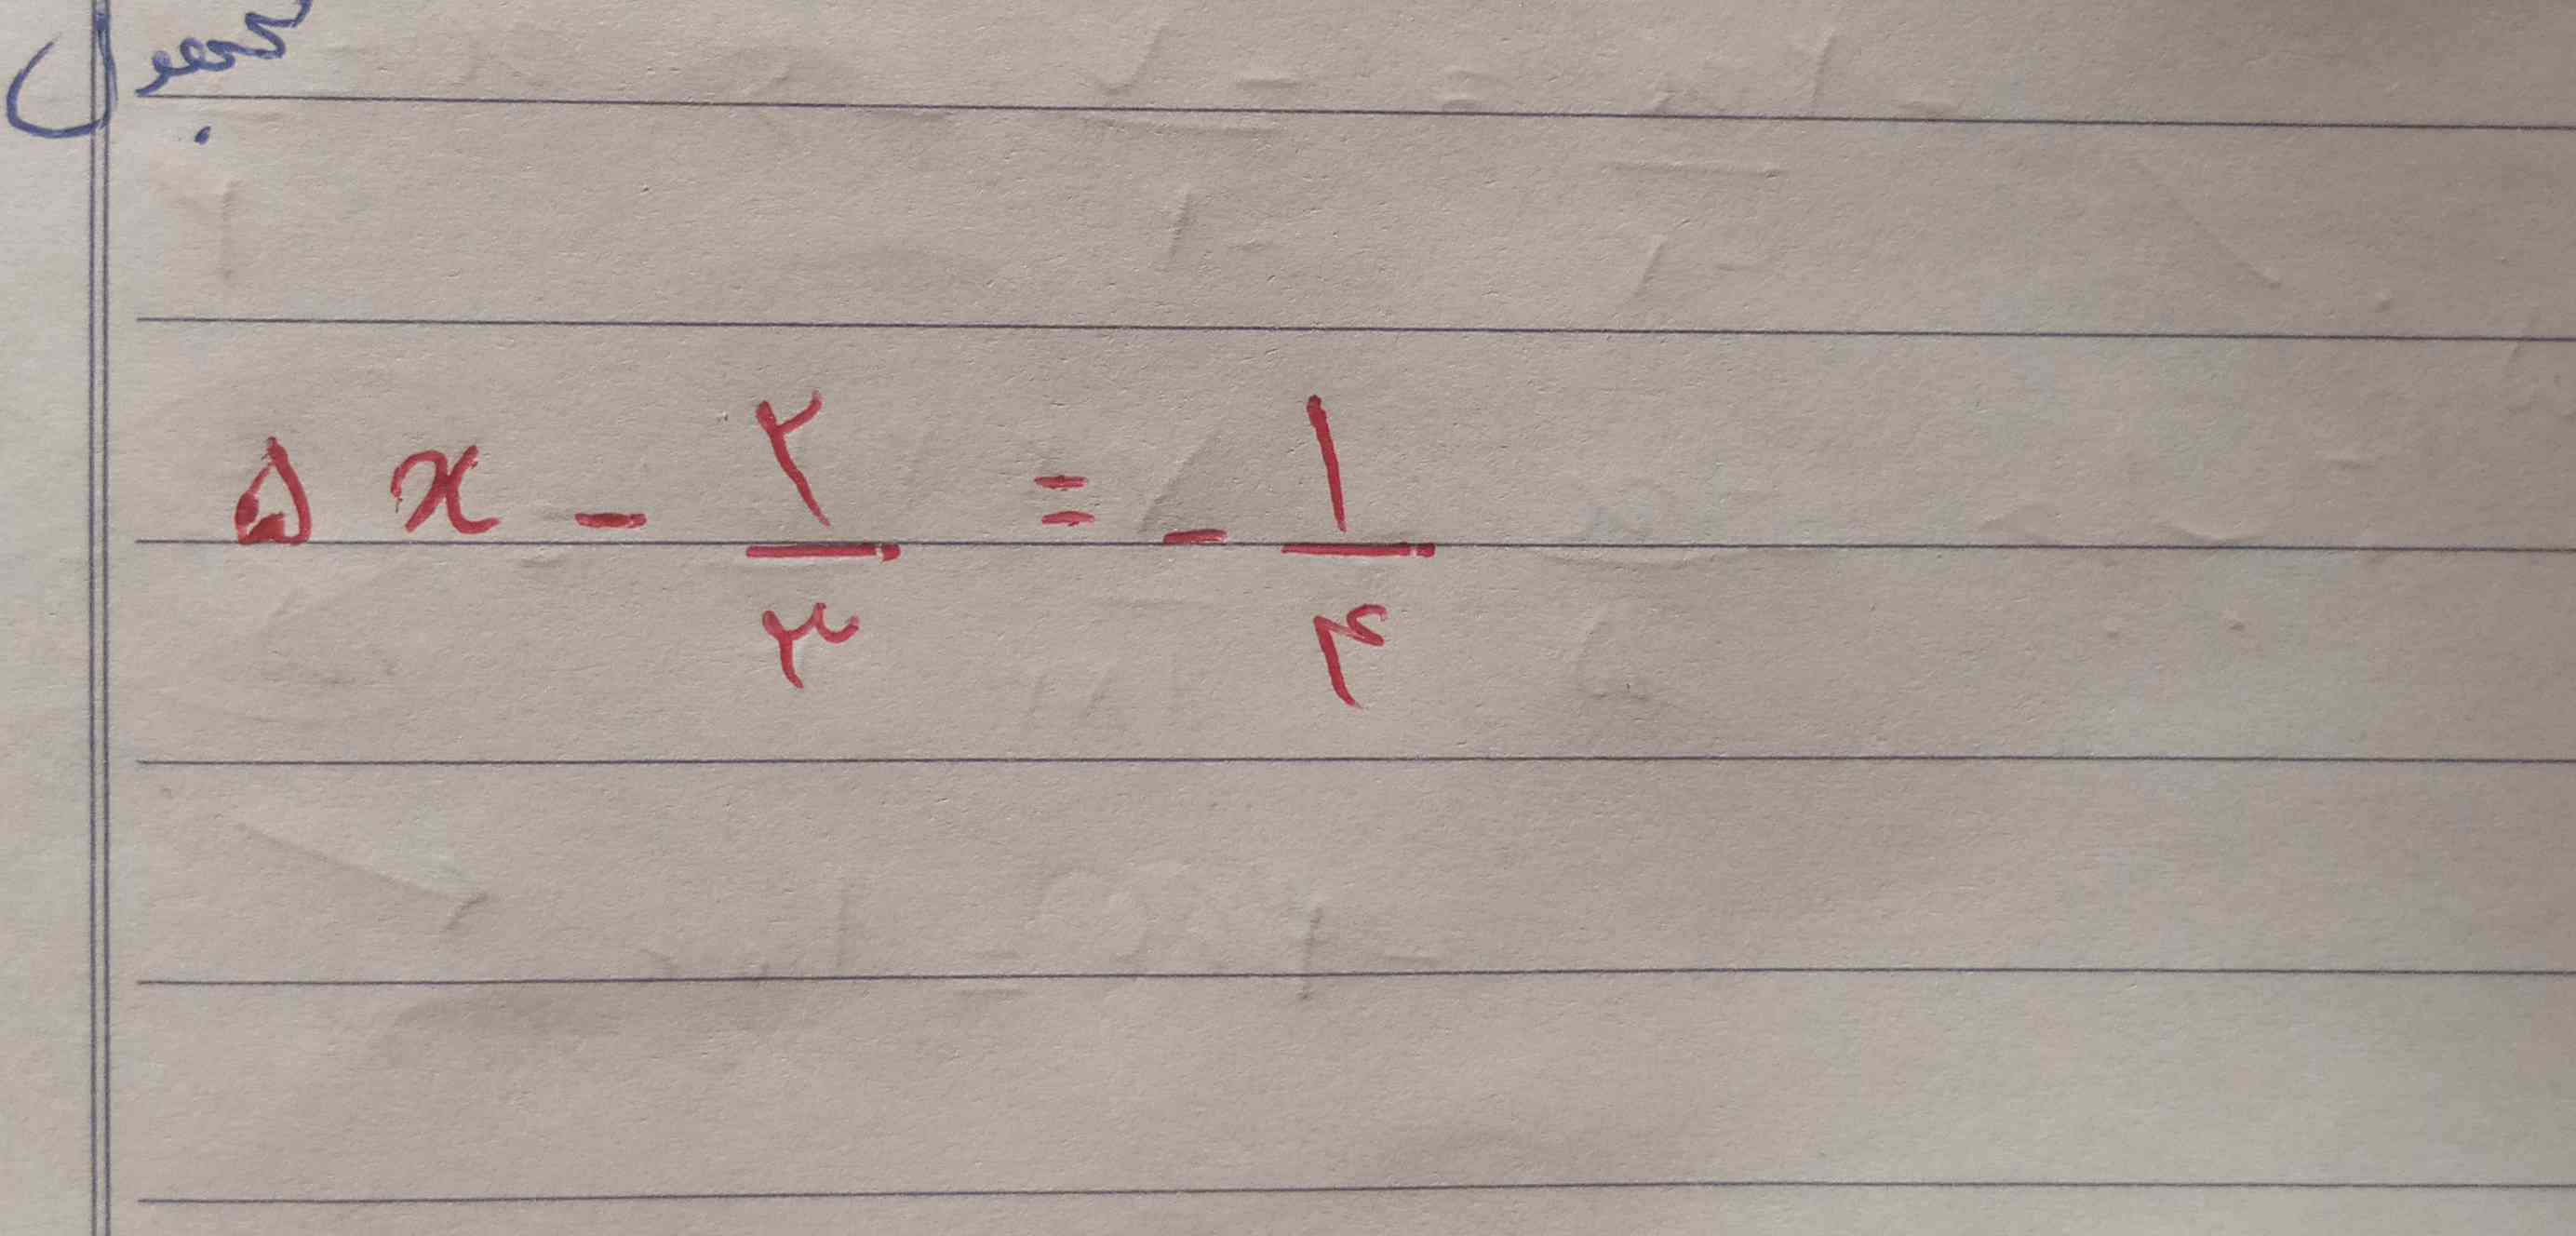 ببخشید این معادله درجه اول را برام توضیح میدید با راه حل 